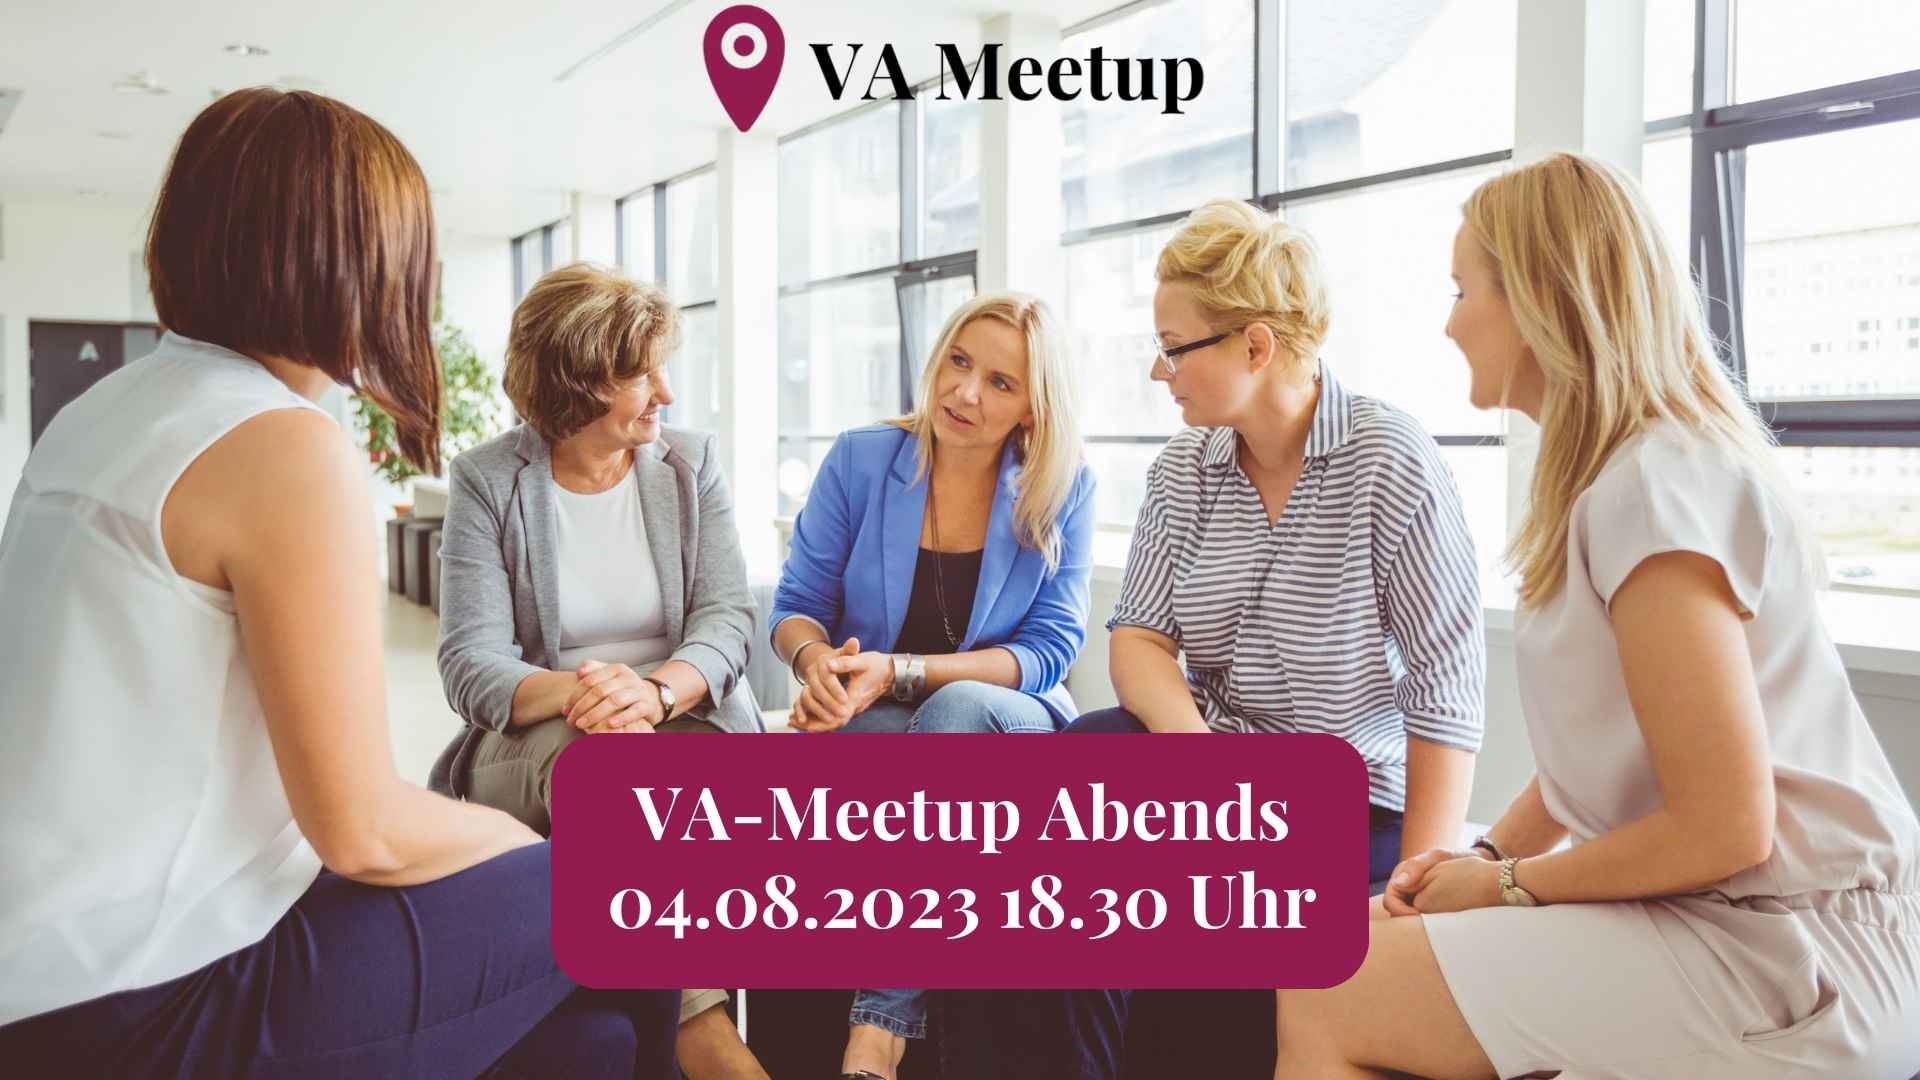 VA Meetup abends am 4.8.2023 um 18.30 Uhr